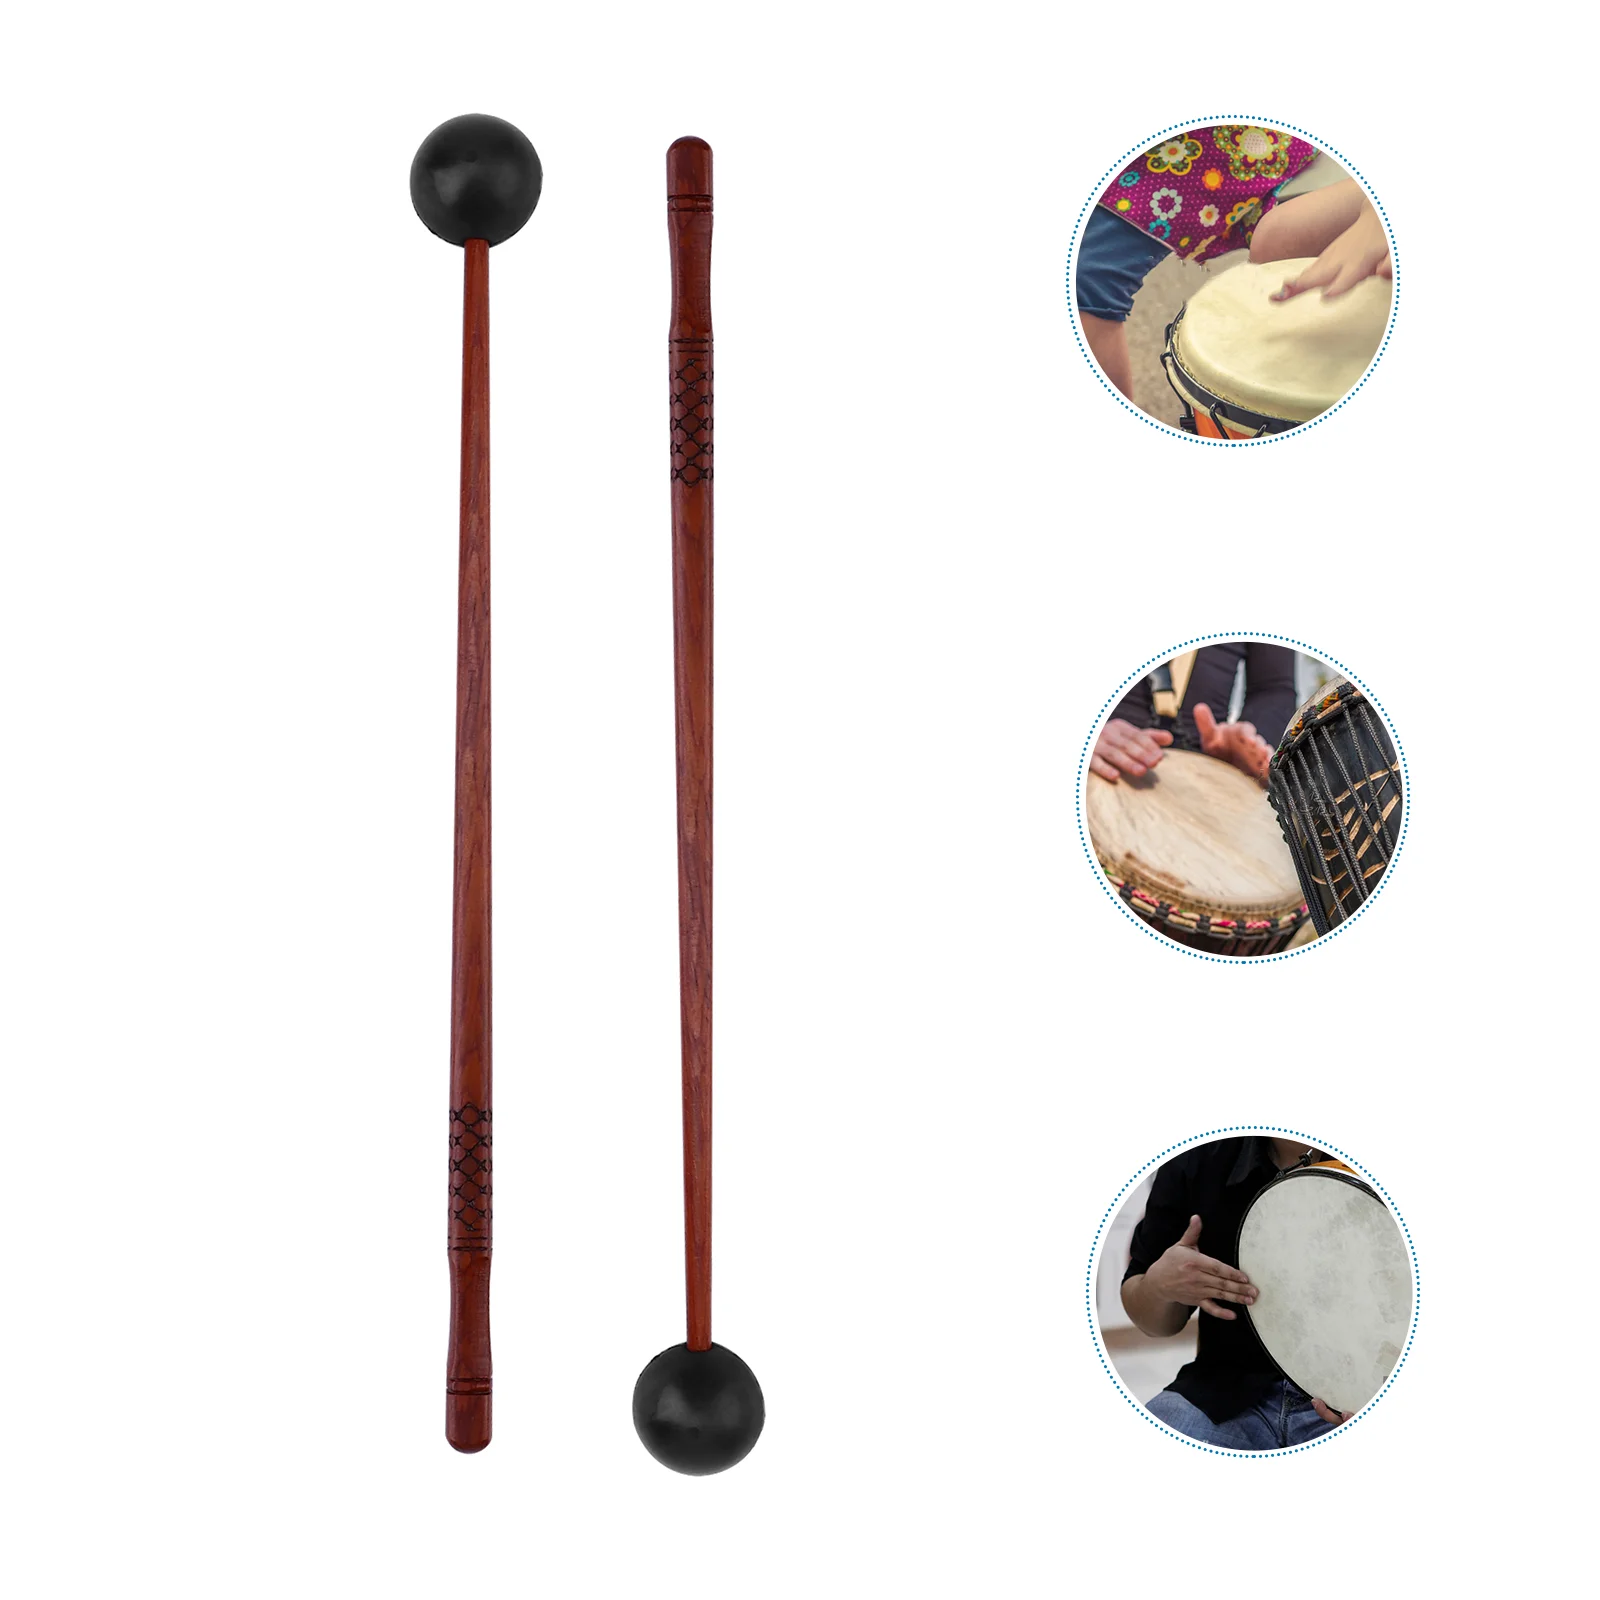 

Мягкий Резиновый барабан, искусственная кожа, персонализированные палочки, детские музыкальные инструменты